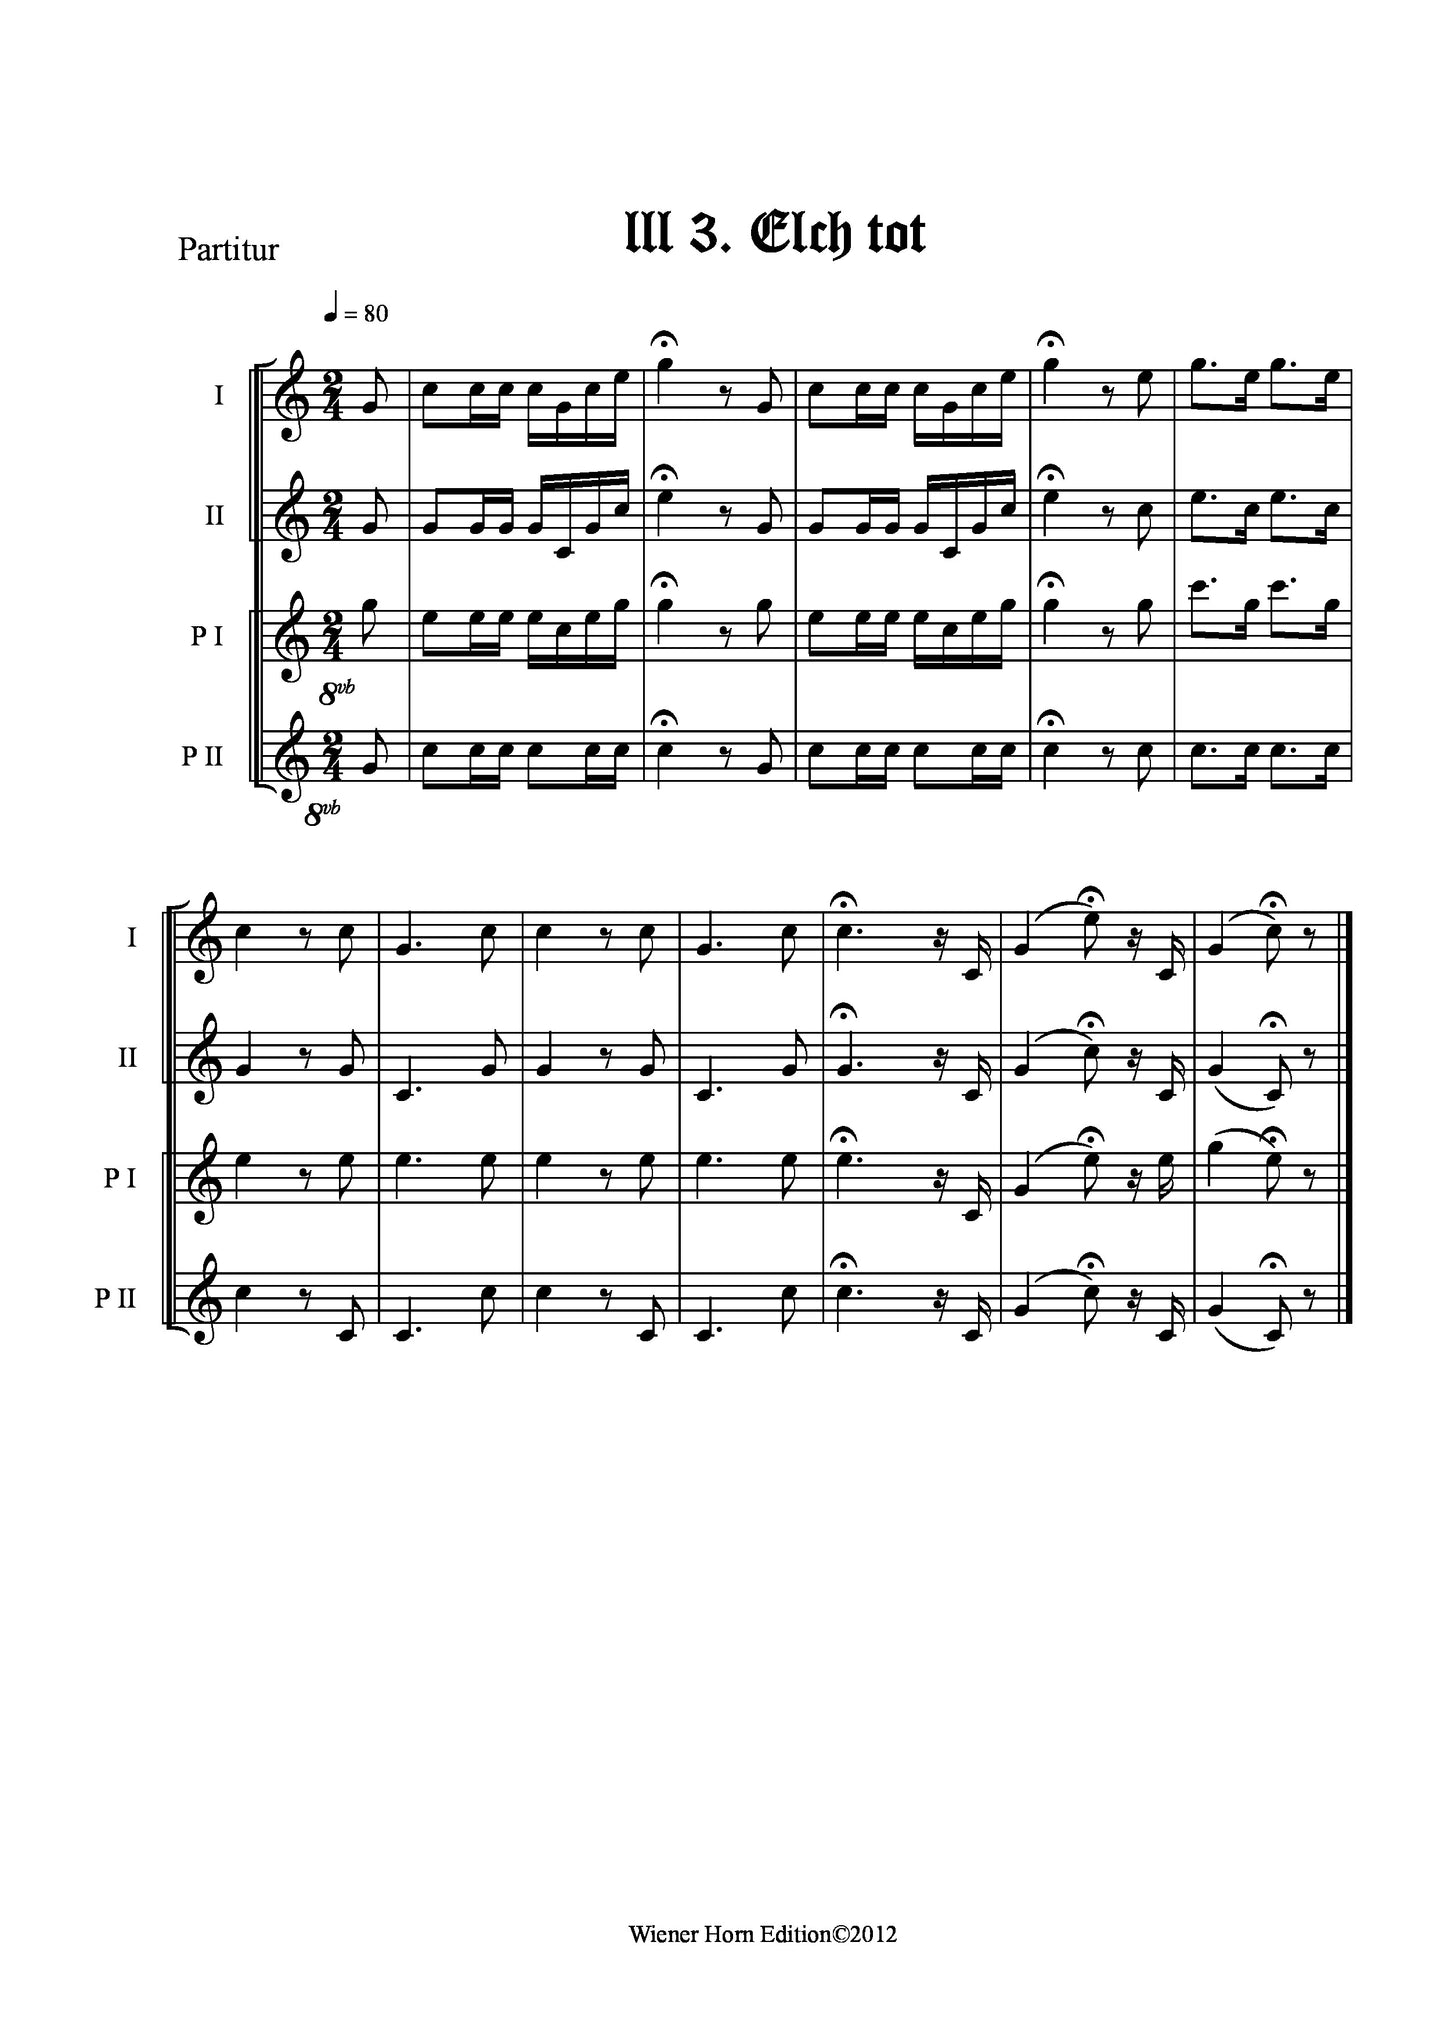 Elch tot - Totsignal für 2 Pless Hörner & 2 Parforce Hörner in B mit Text